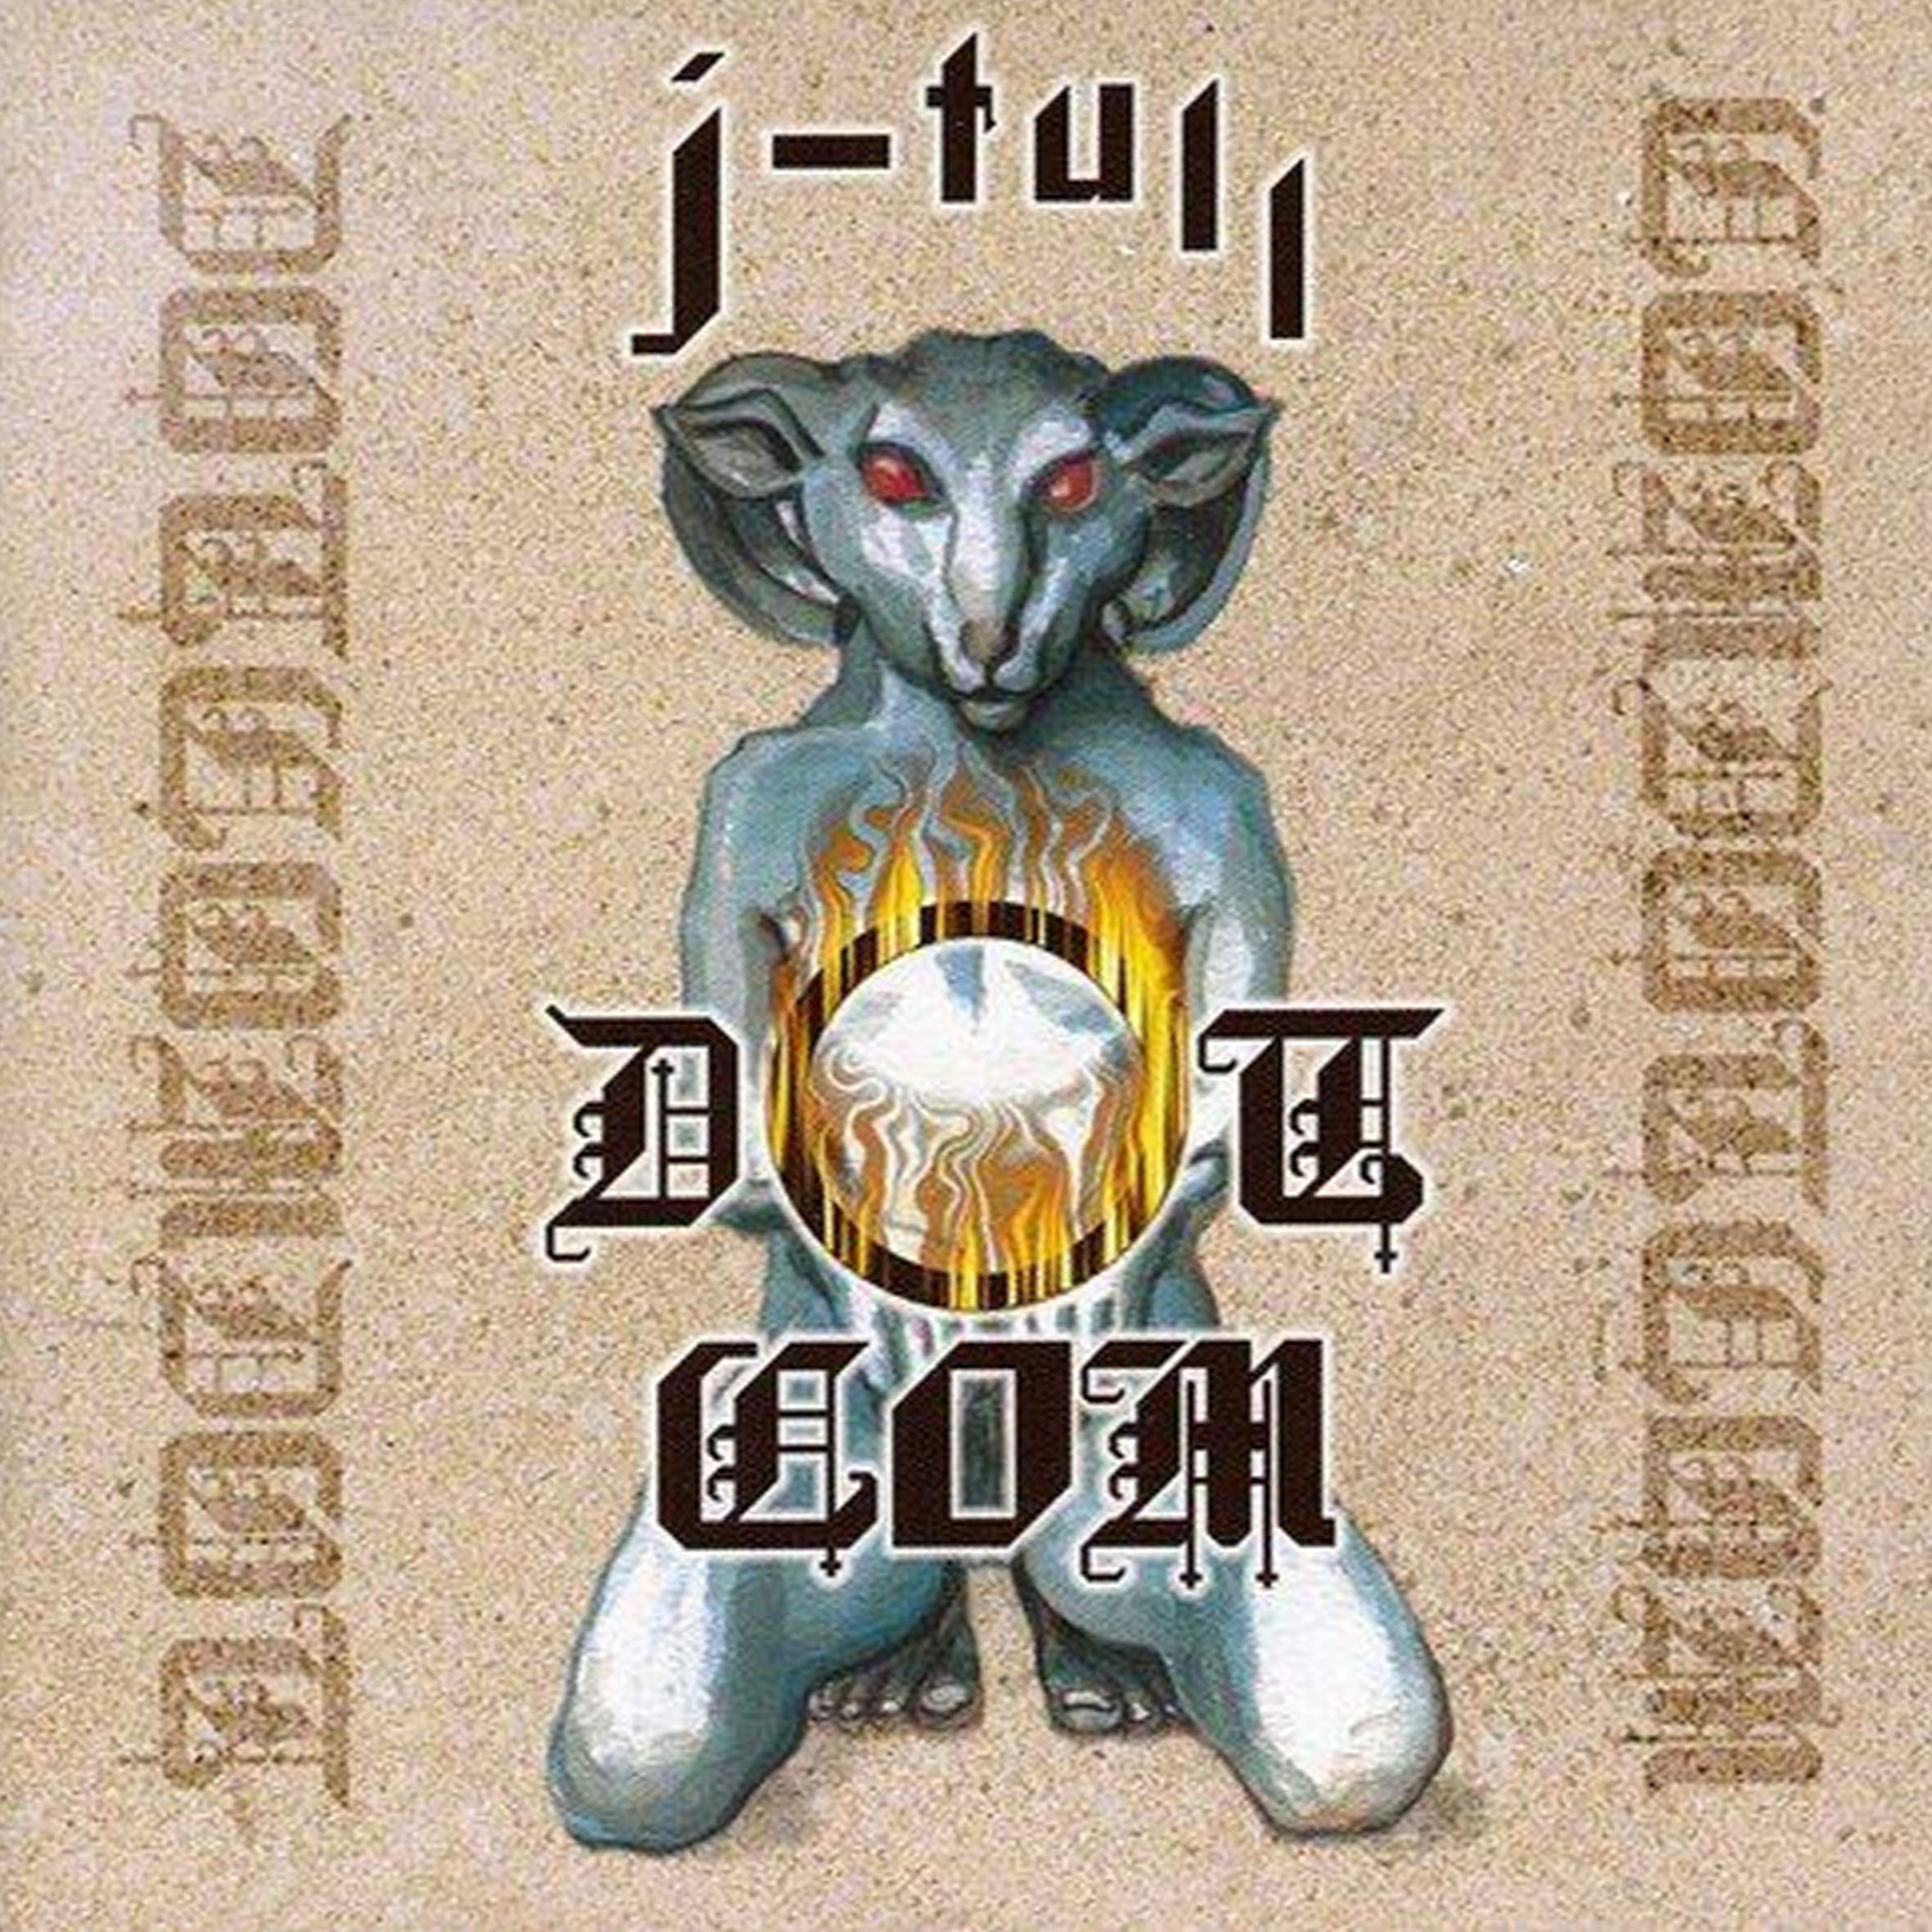 CD - Jethro Tull - Dot Com